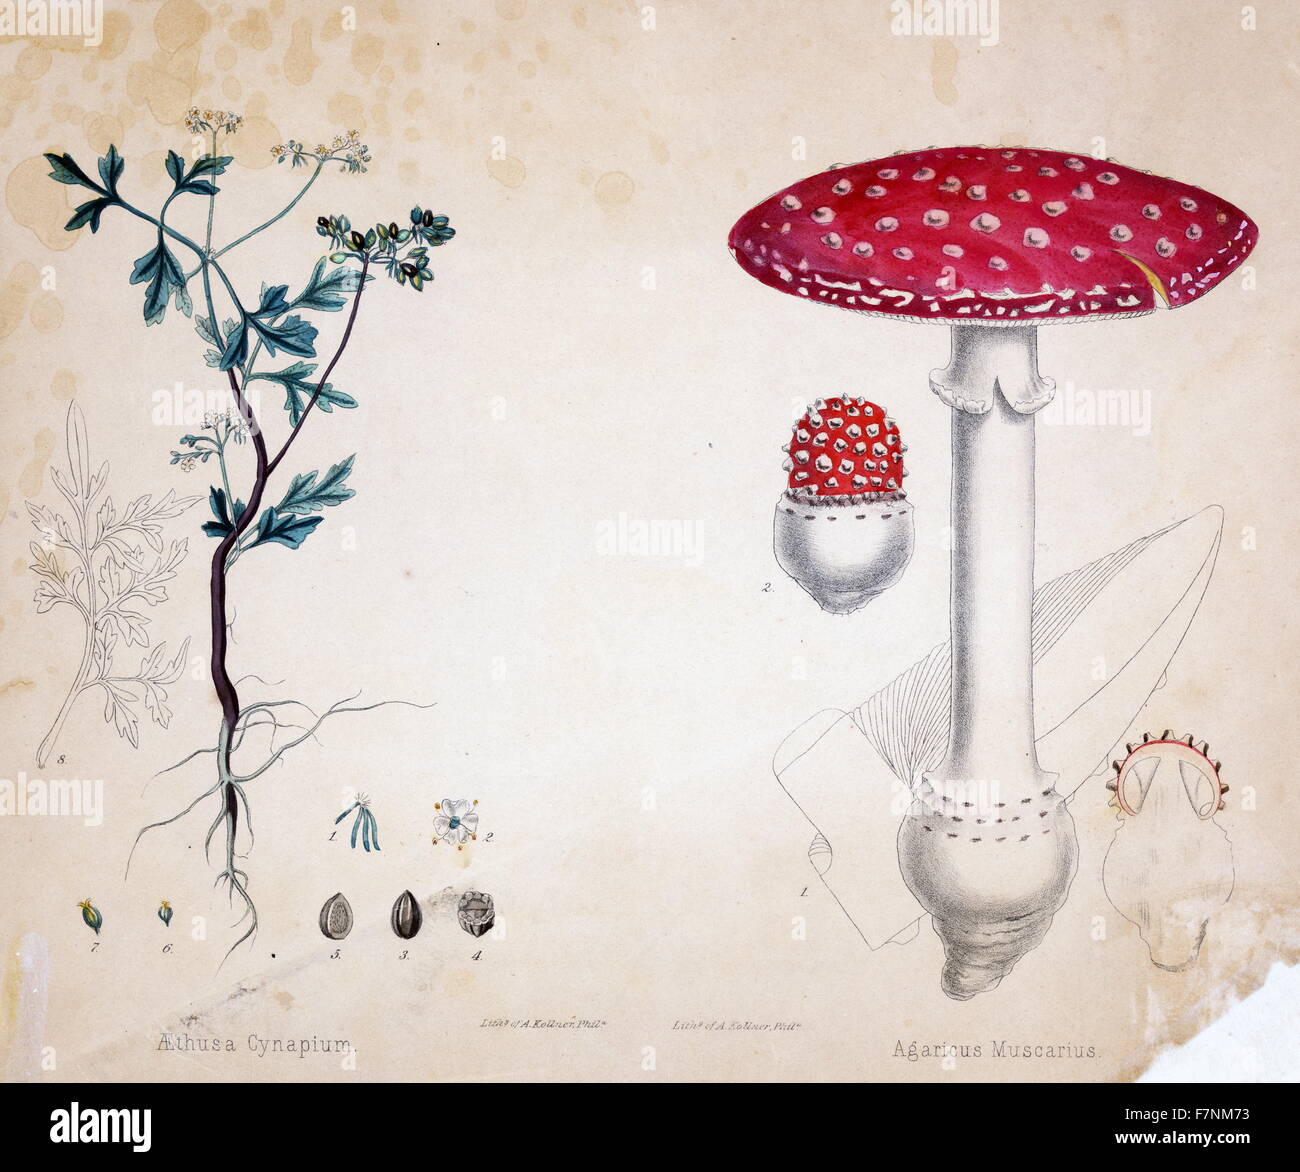 Exemplar der botanische Illustrationen für Aethusa Cynapium, ein Kraut und Agaricus Muscarius, einen Pilz zu drucken Stockfoto